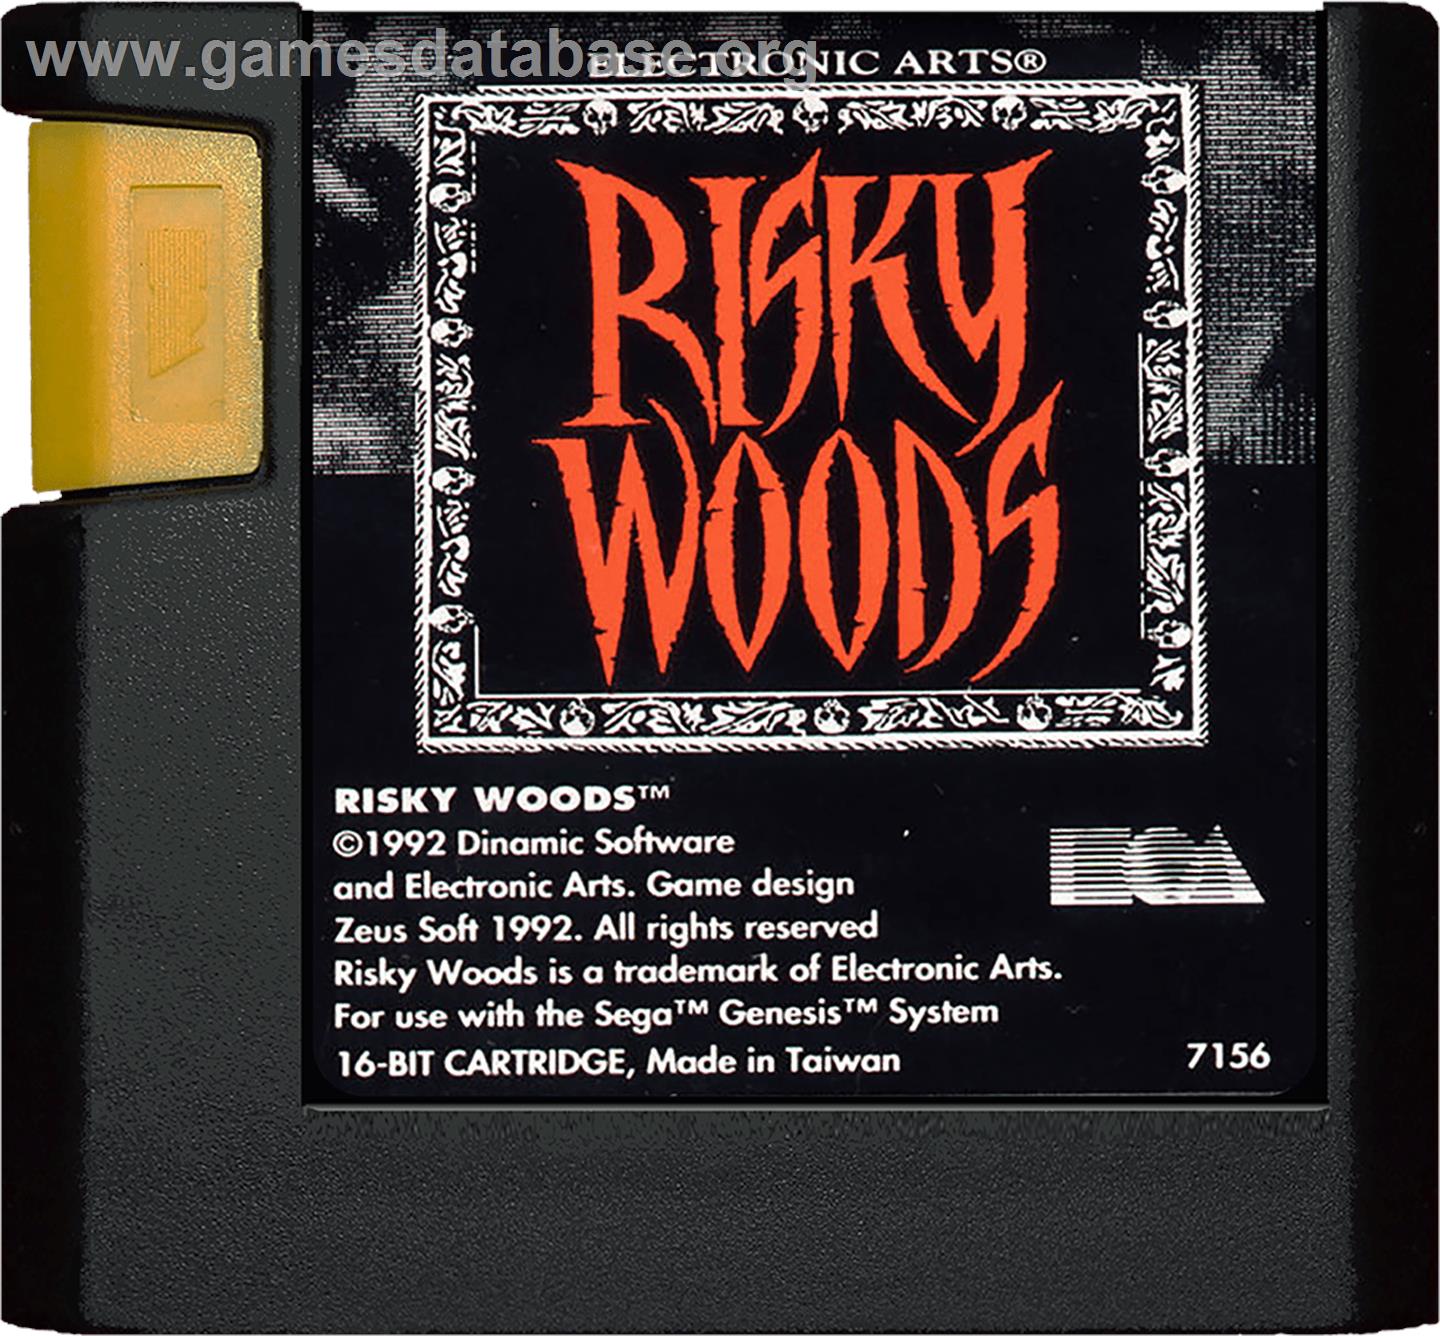 Risky Woods - Sega Genesis - Artwork - Cartridge